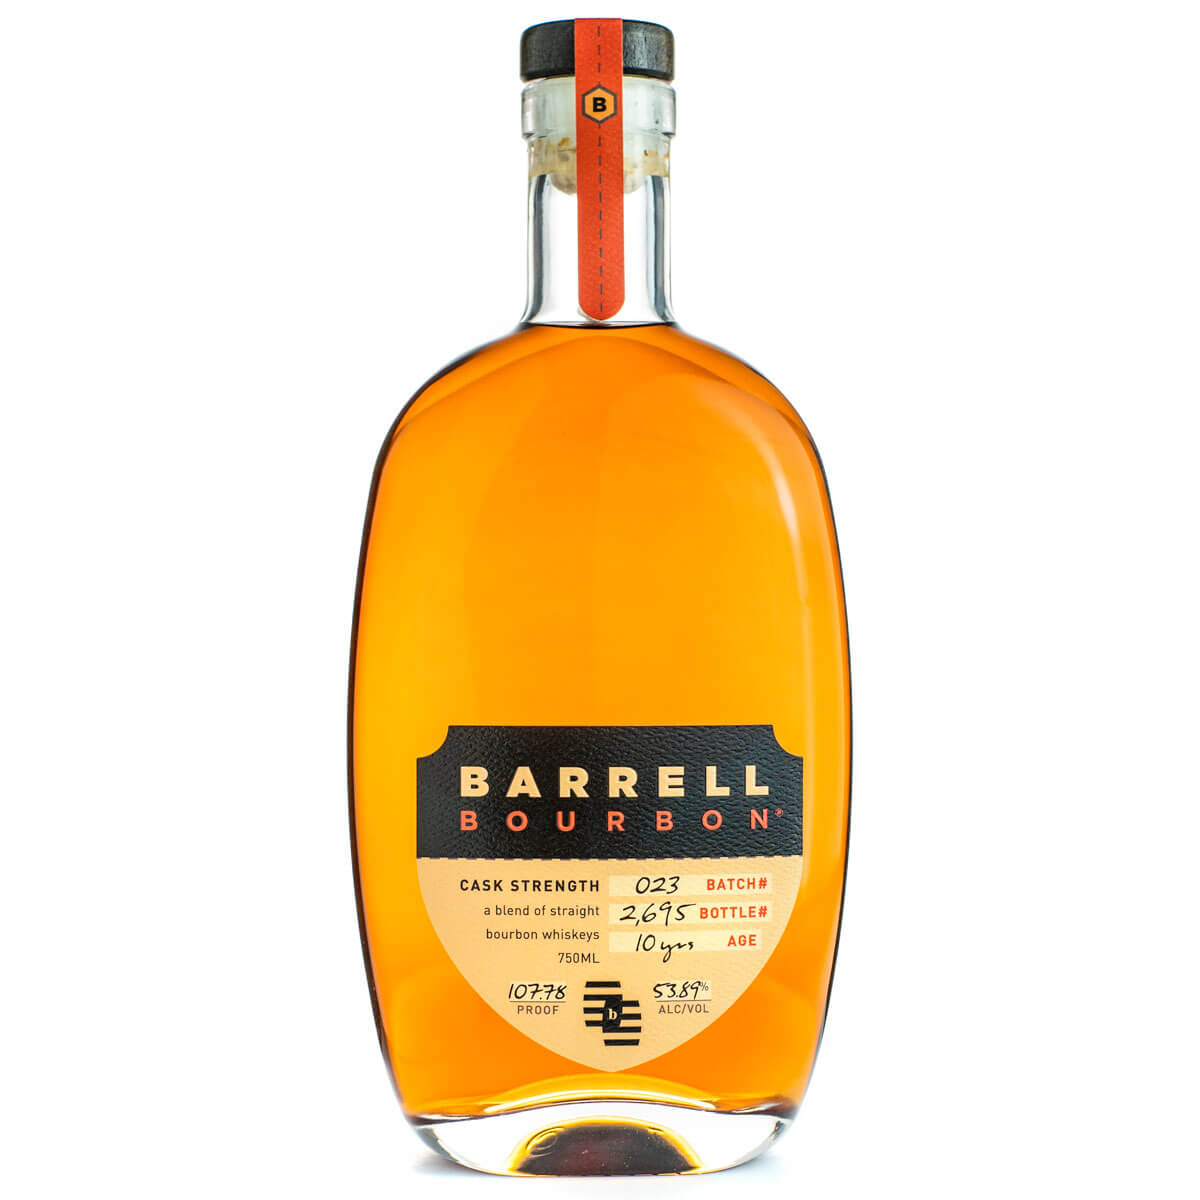 Barrell Bourbon Cask Strength bottle